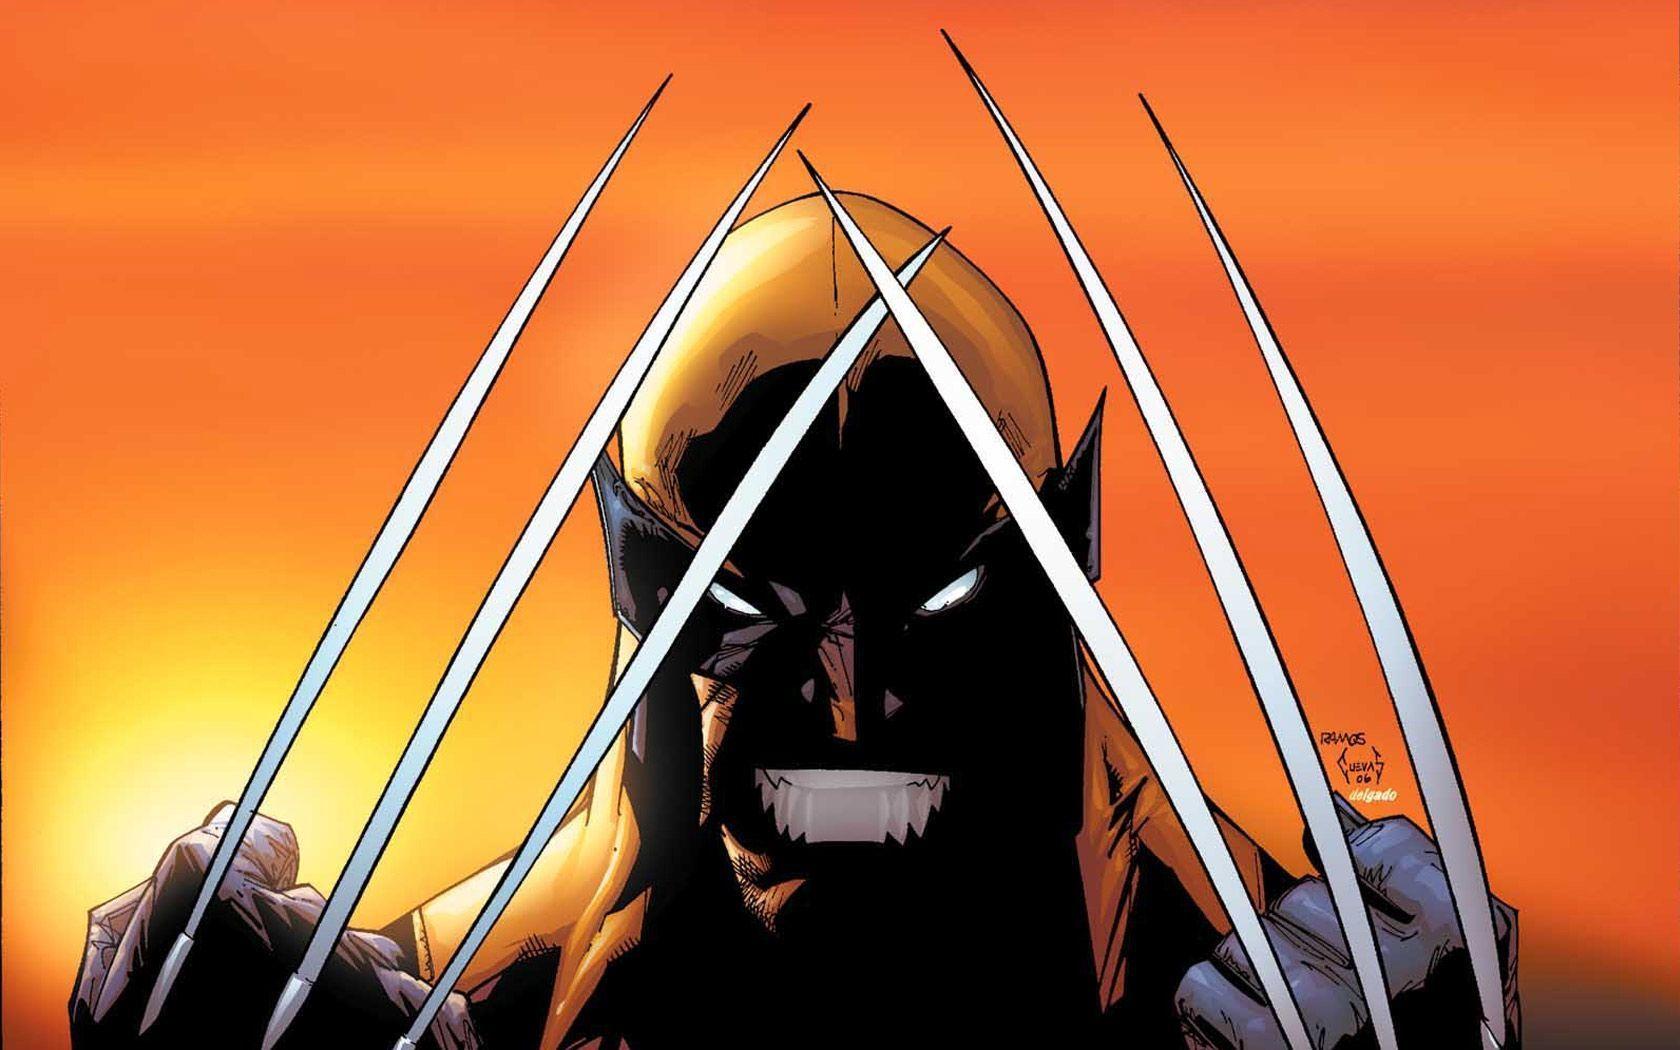 X-Men Wolverine 2015 Wallpapers - Wallpaper Cave X Men Iphone 5 Wallpaper.